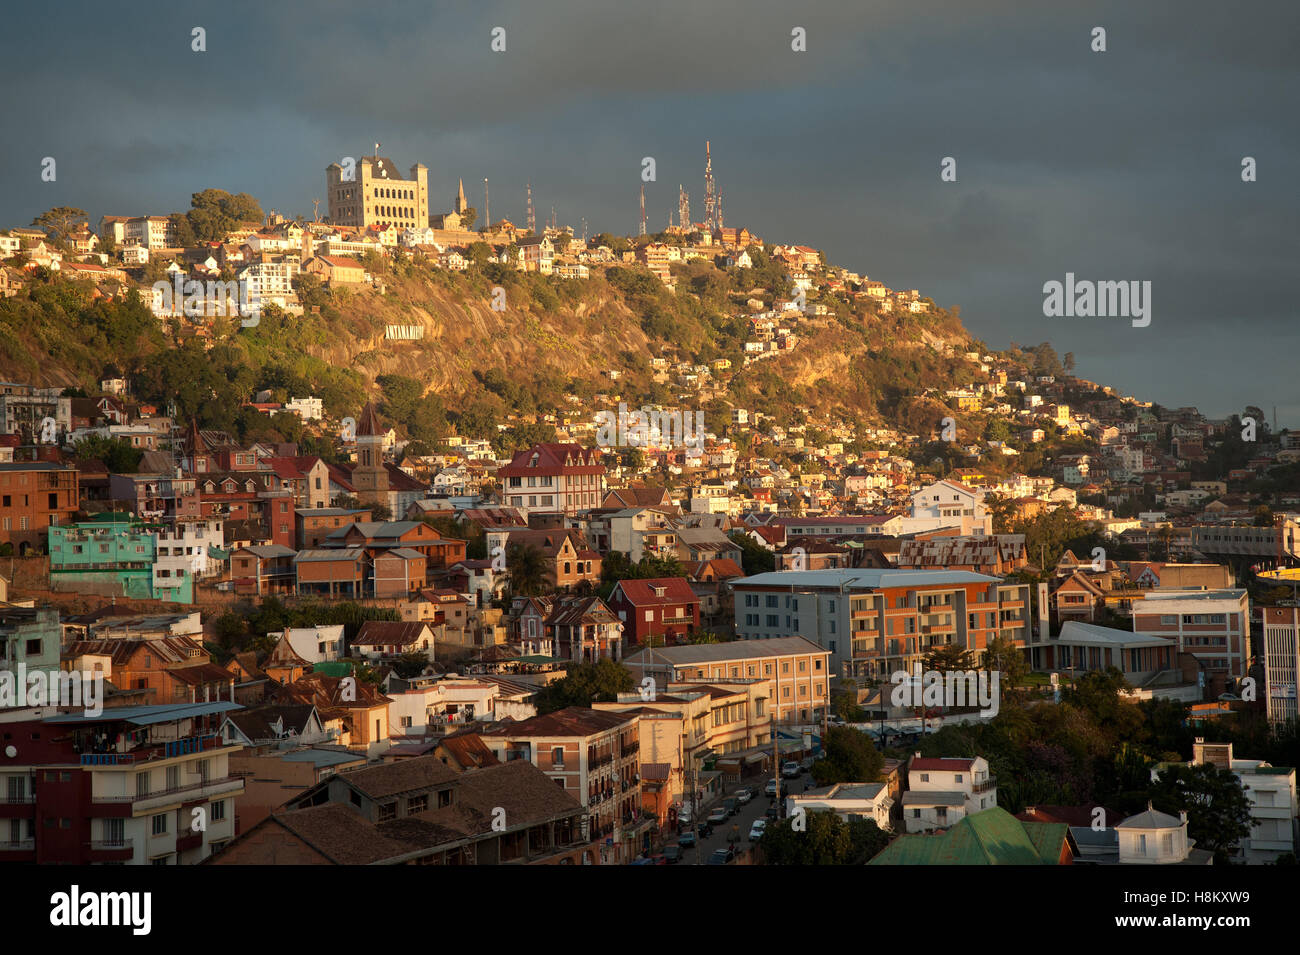 Vue panoramique de la capitale Antananarivo, avec palais de la reine sur le dessus de la colline Banque D'Images